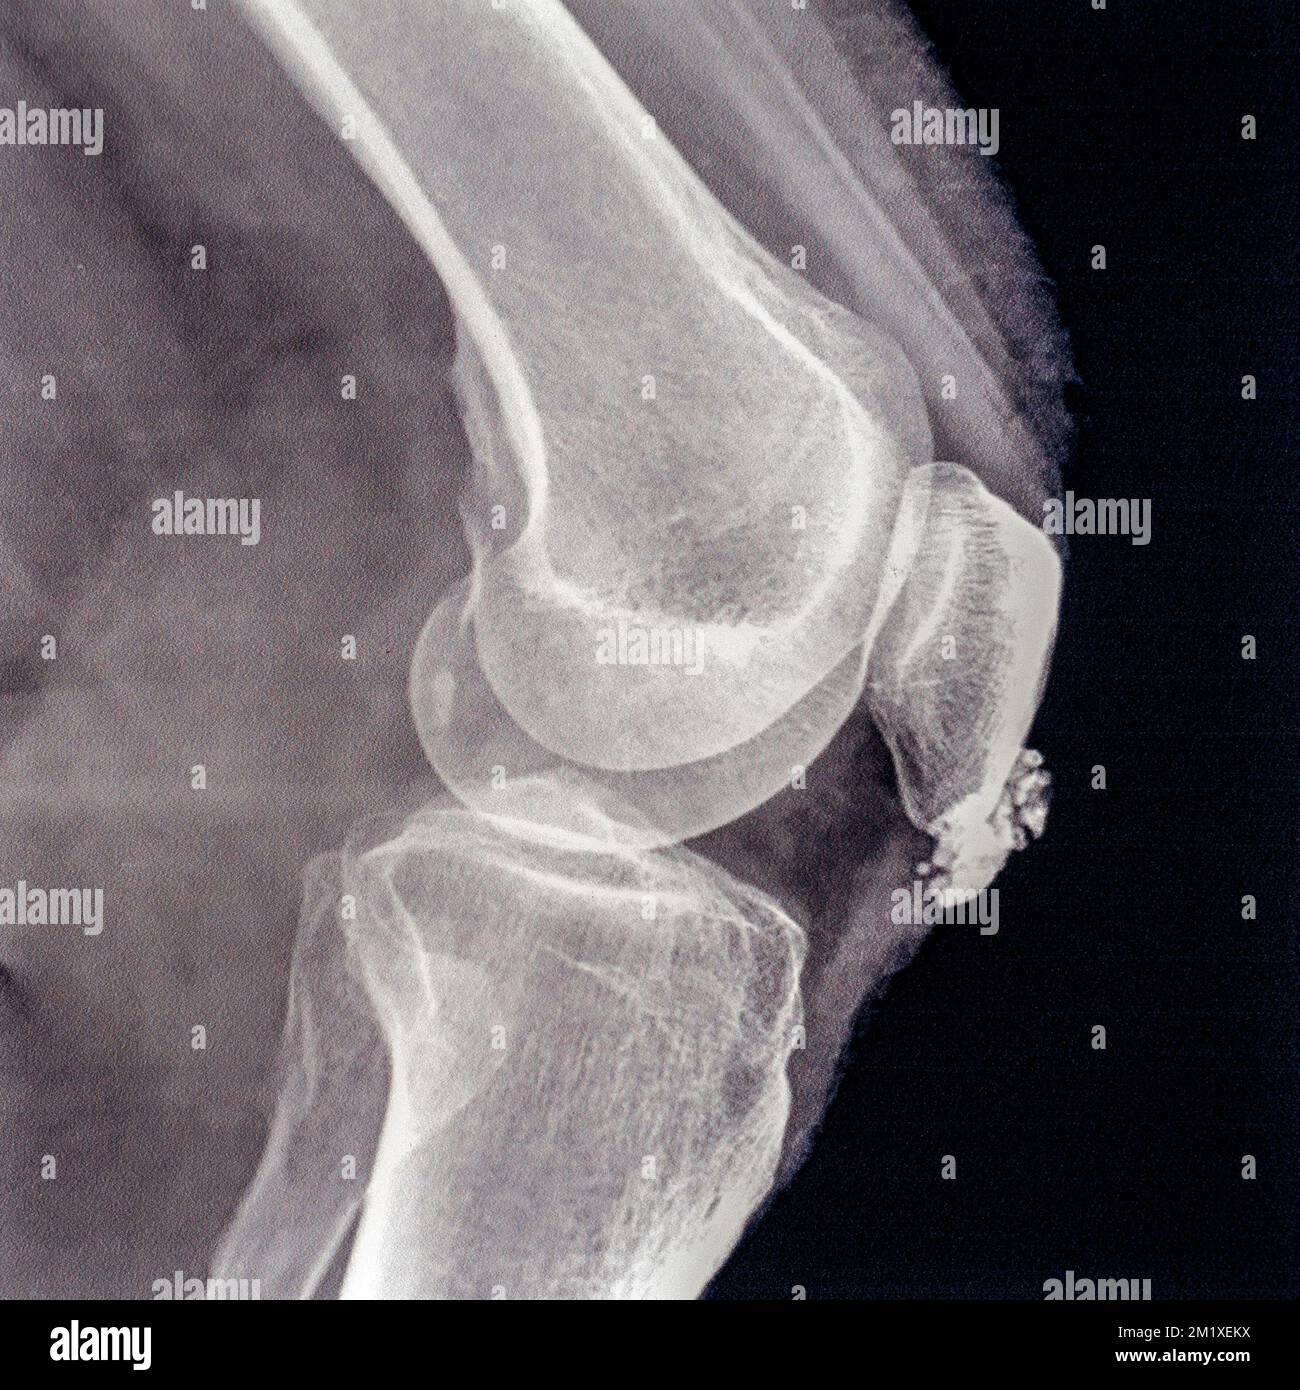 Mediados del siglo 20th Fotografía de rayos X / radiografía que muestra bursitis en la articulación de la rodilla, inflamación de una o más bursas de líquido sinovial en el cuerpo Foto de stock